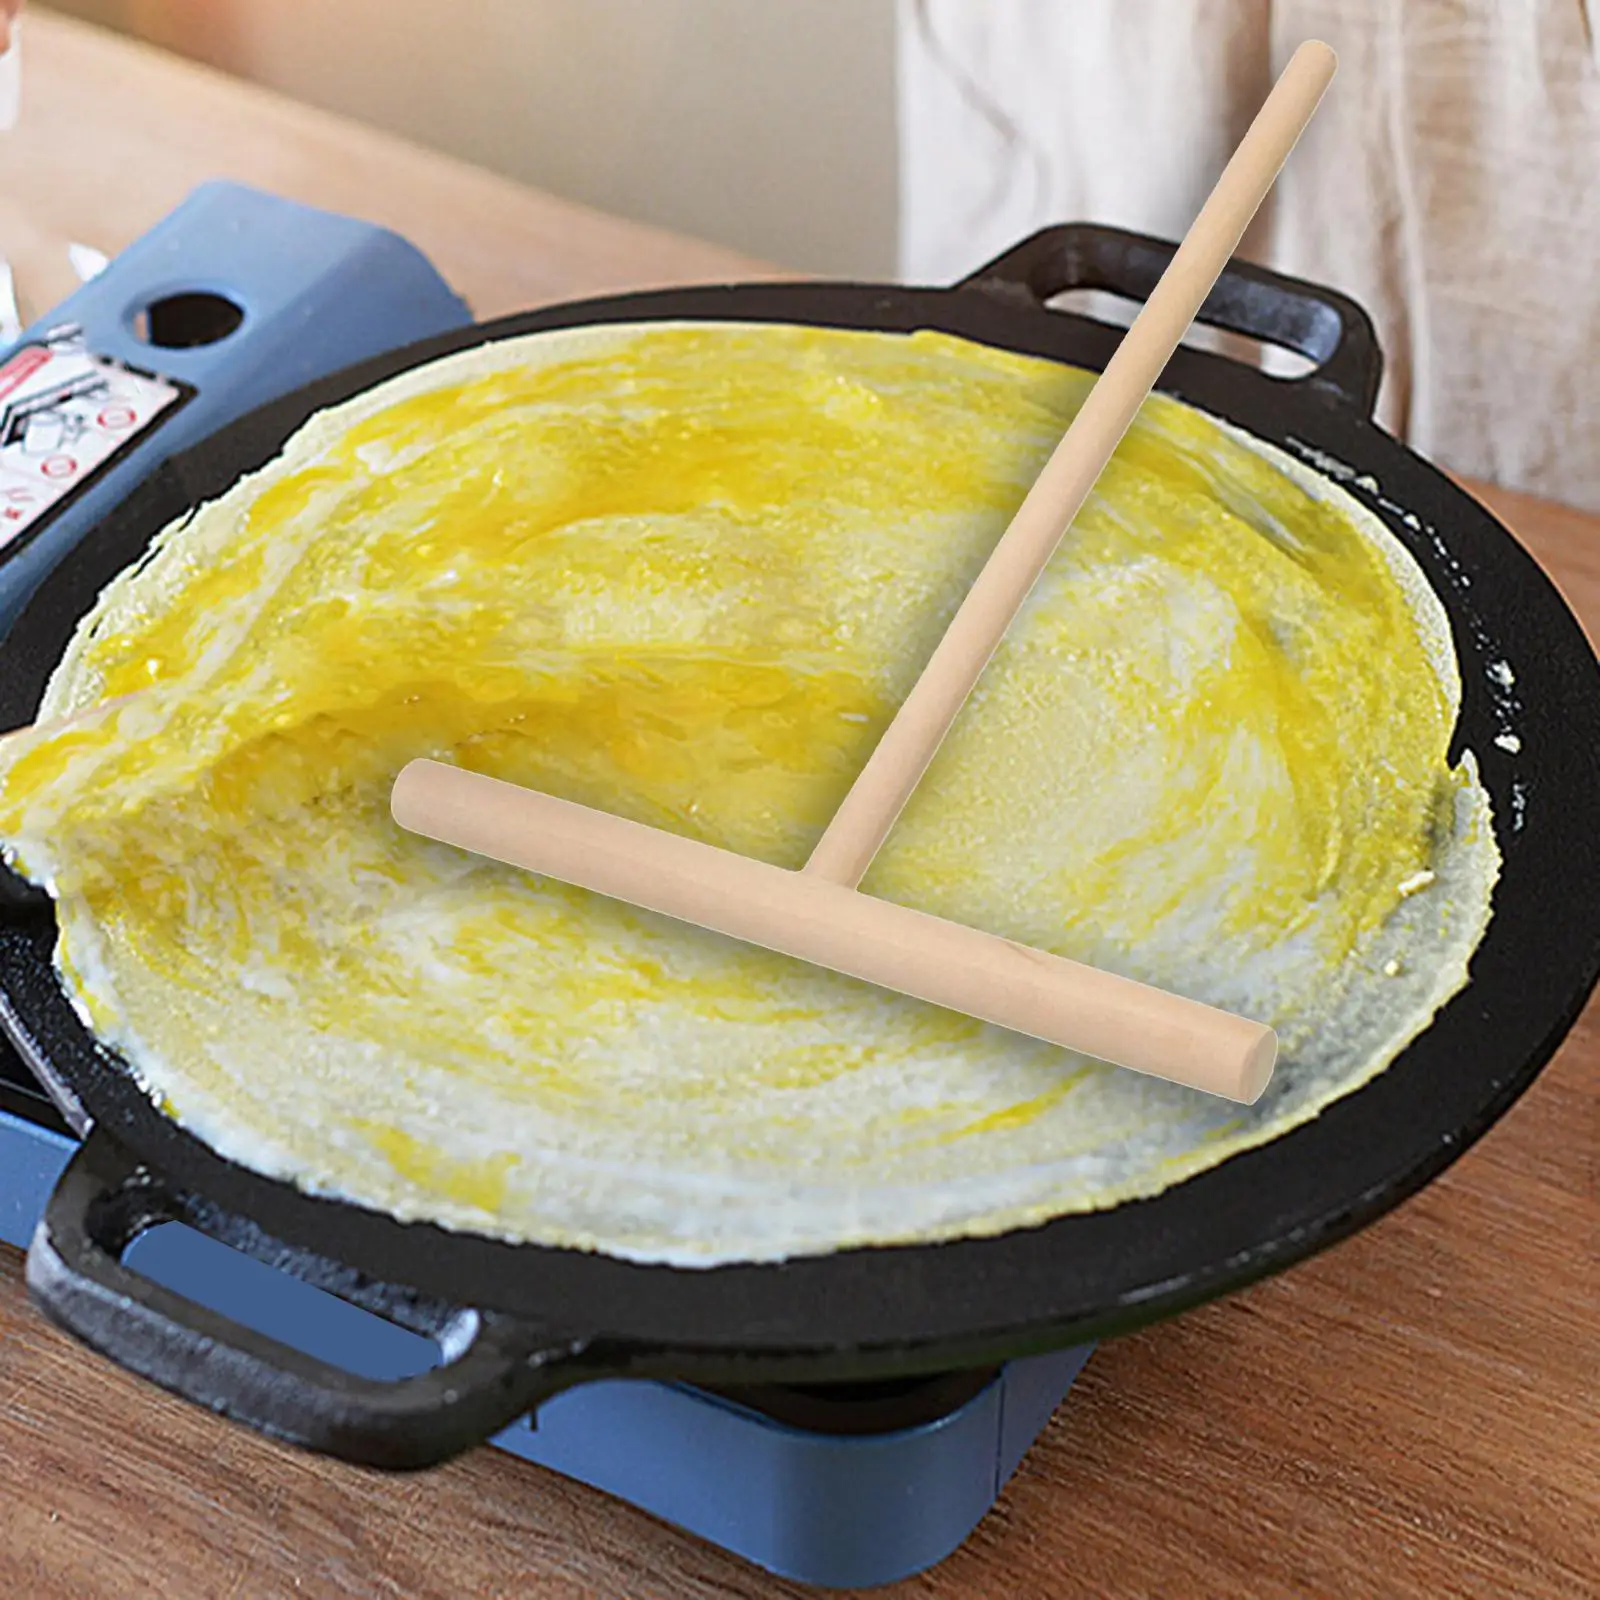 Wood Cooking Rake Pancake Tools Home Batter Spreading Kitchen Supplies DIY